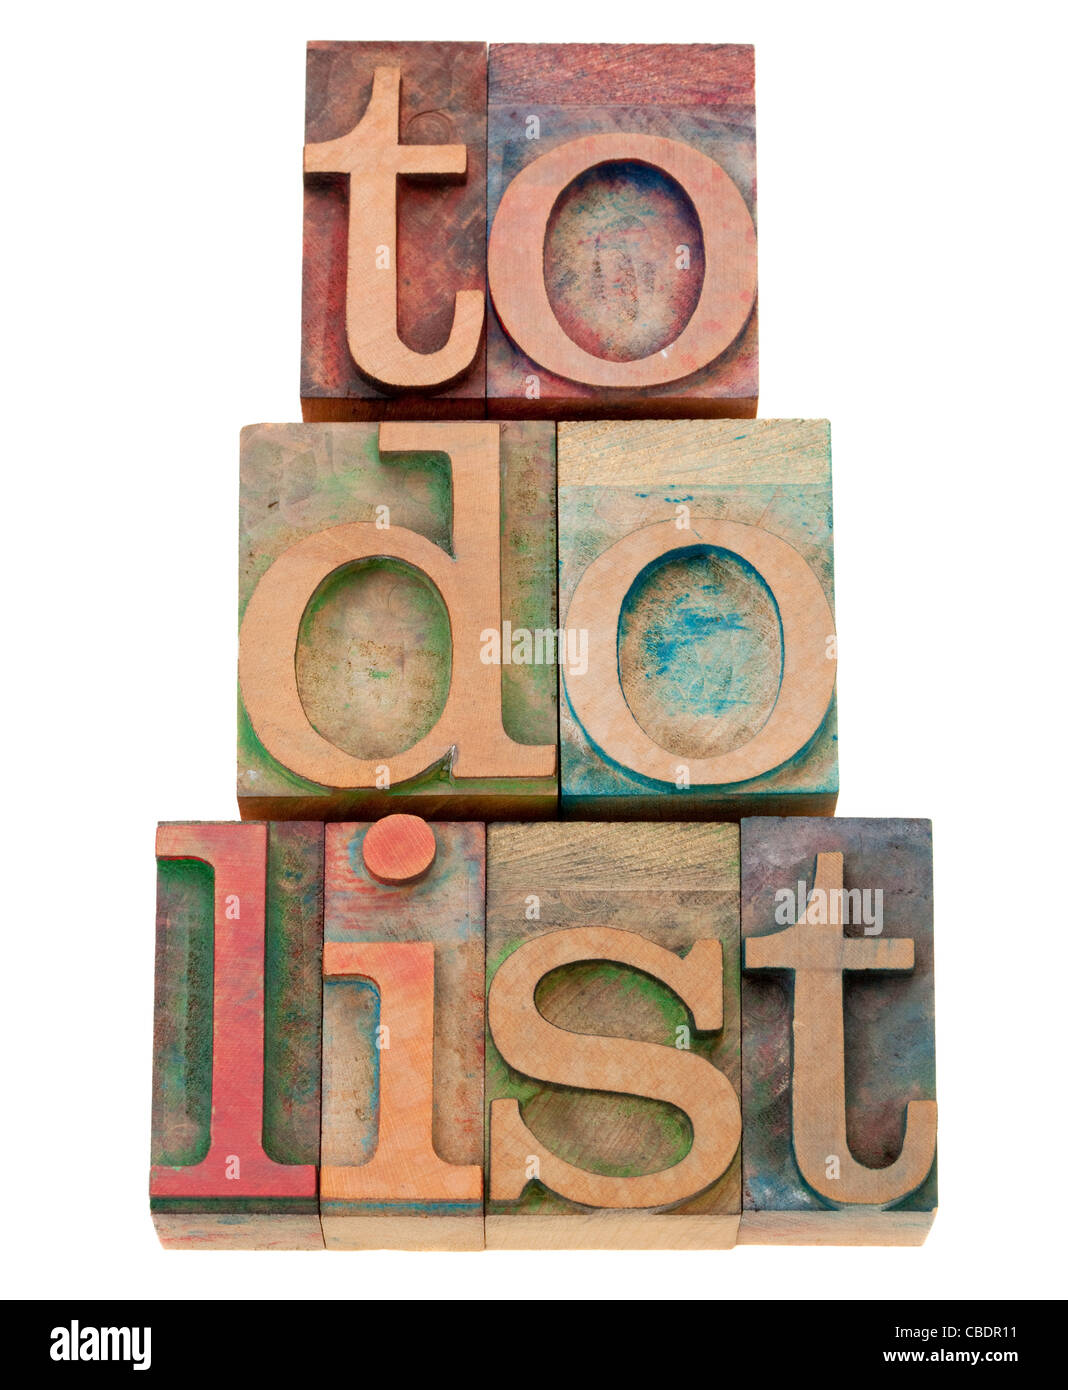 Liste de tâches Gestion des tâches - Notion - texte isolé en bois blocs typographie vintage Banque D'Images